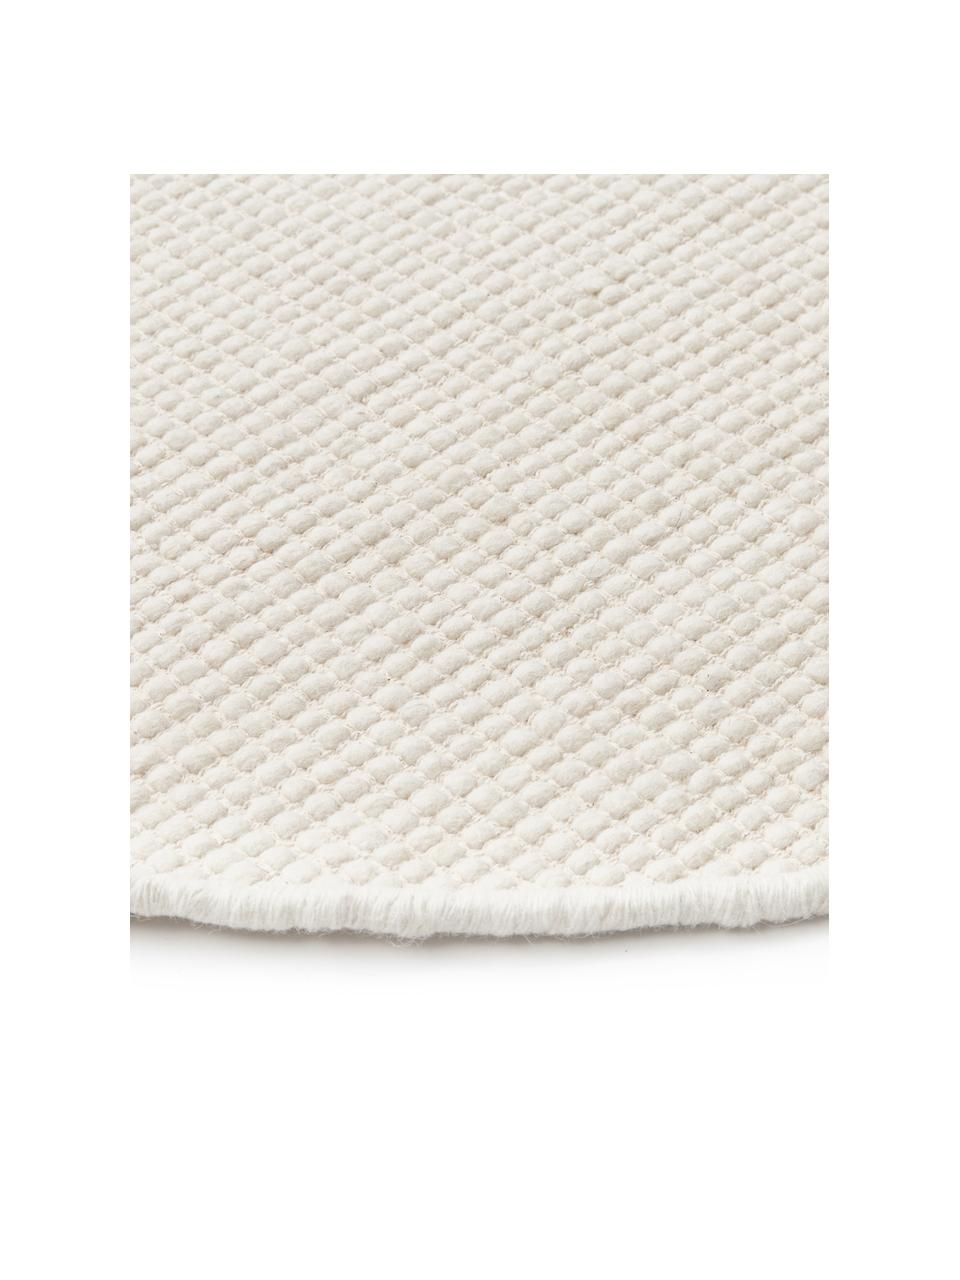 Tappeto rotondo in lana color crema tessuto a mano Amaro, Retro: 100% cotone Nel caso dei , Bianco crema, Ø 140 cm (taglia M)